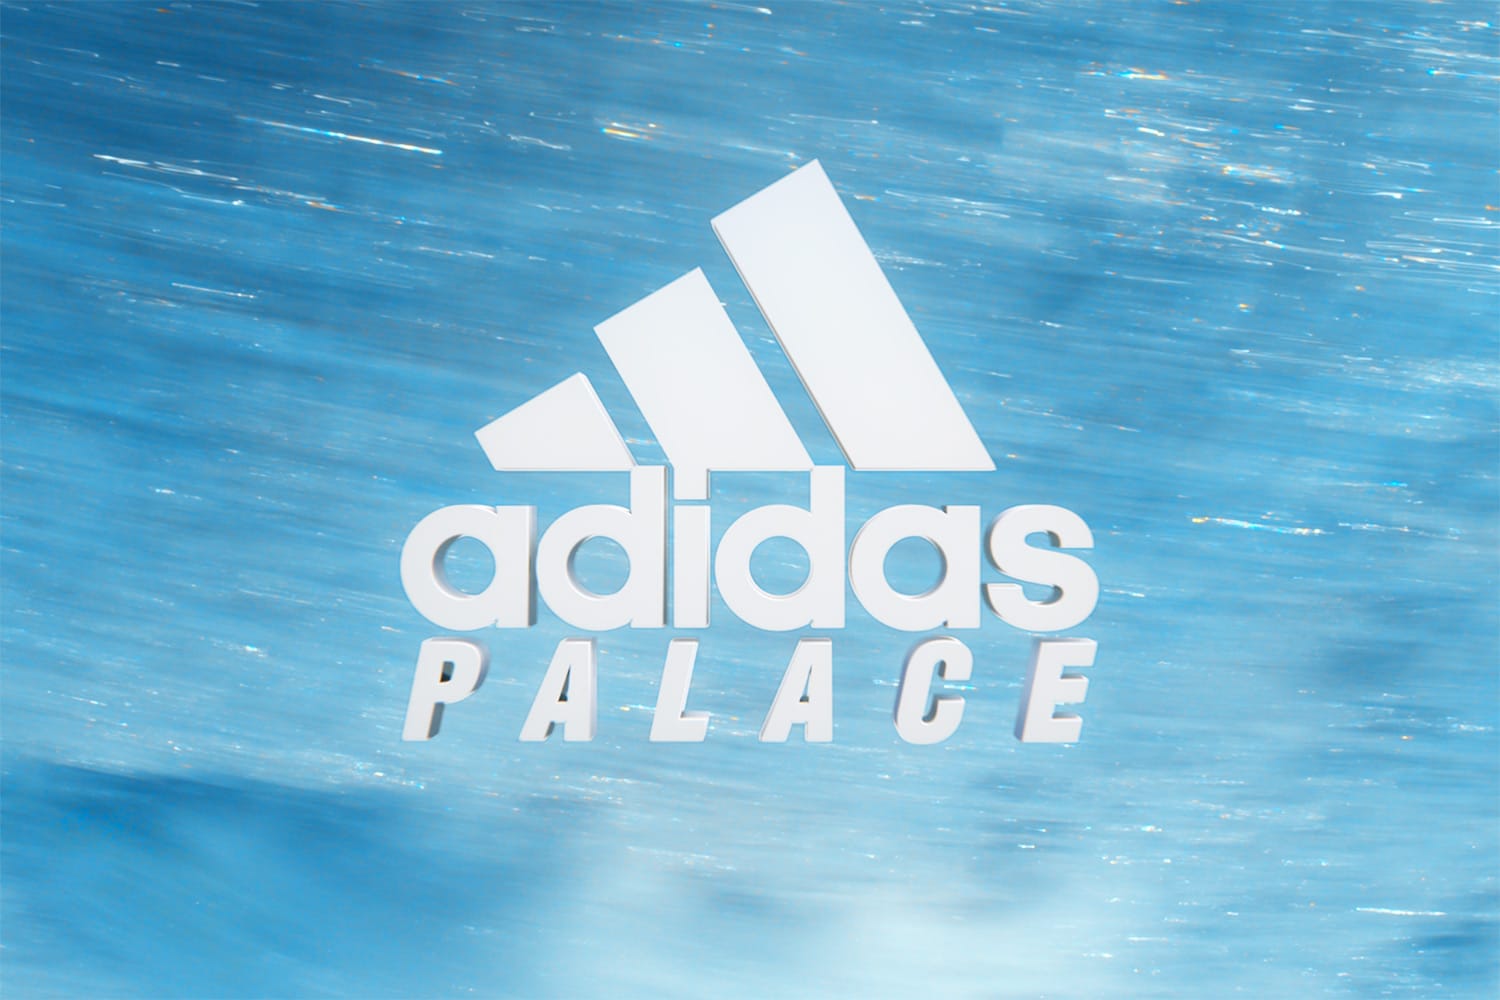 palace x adidas upcoming drop